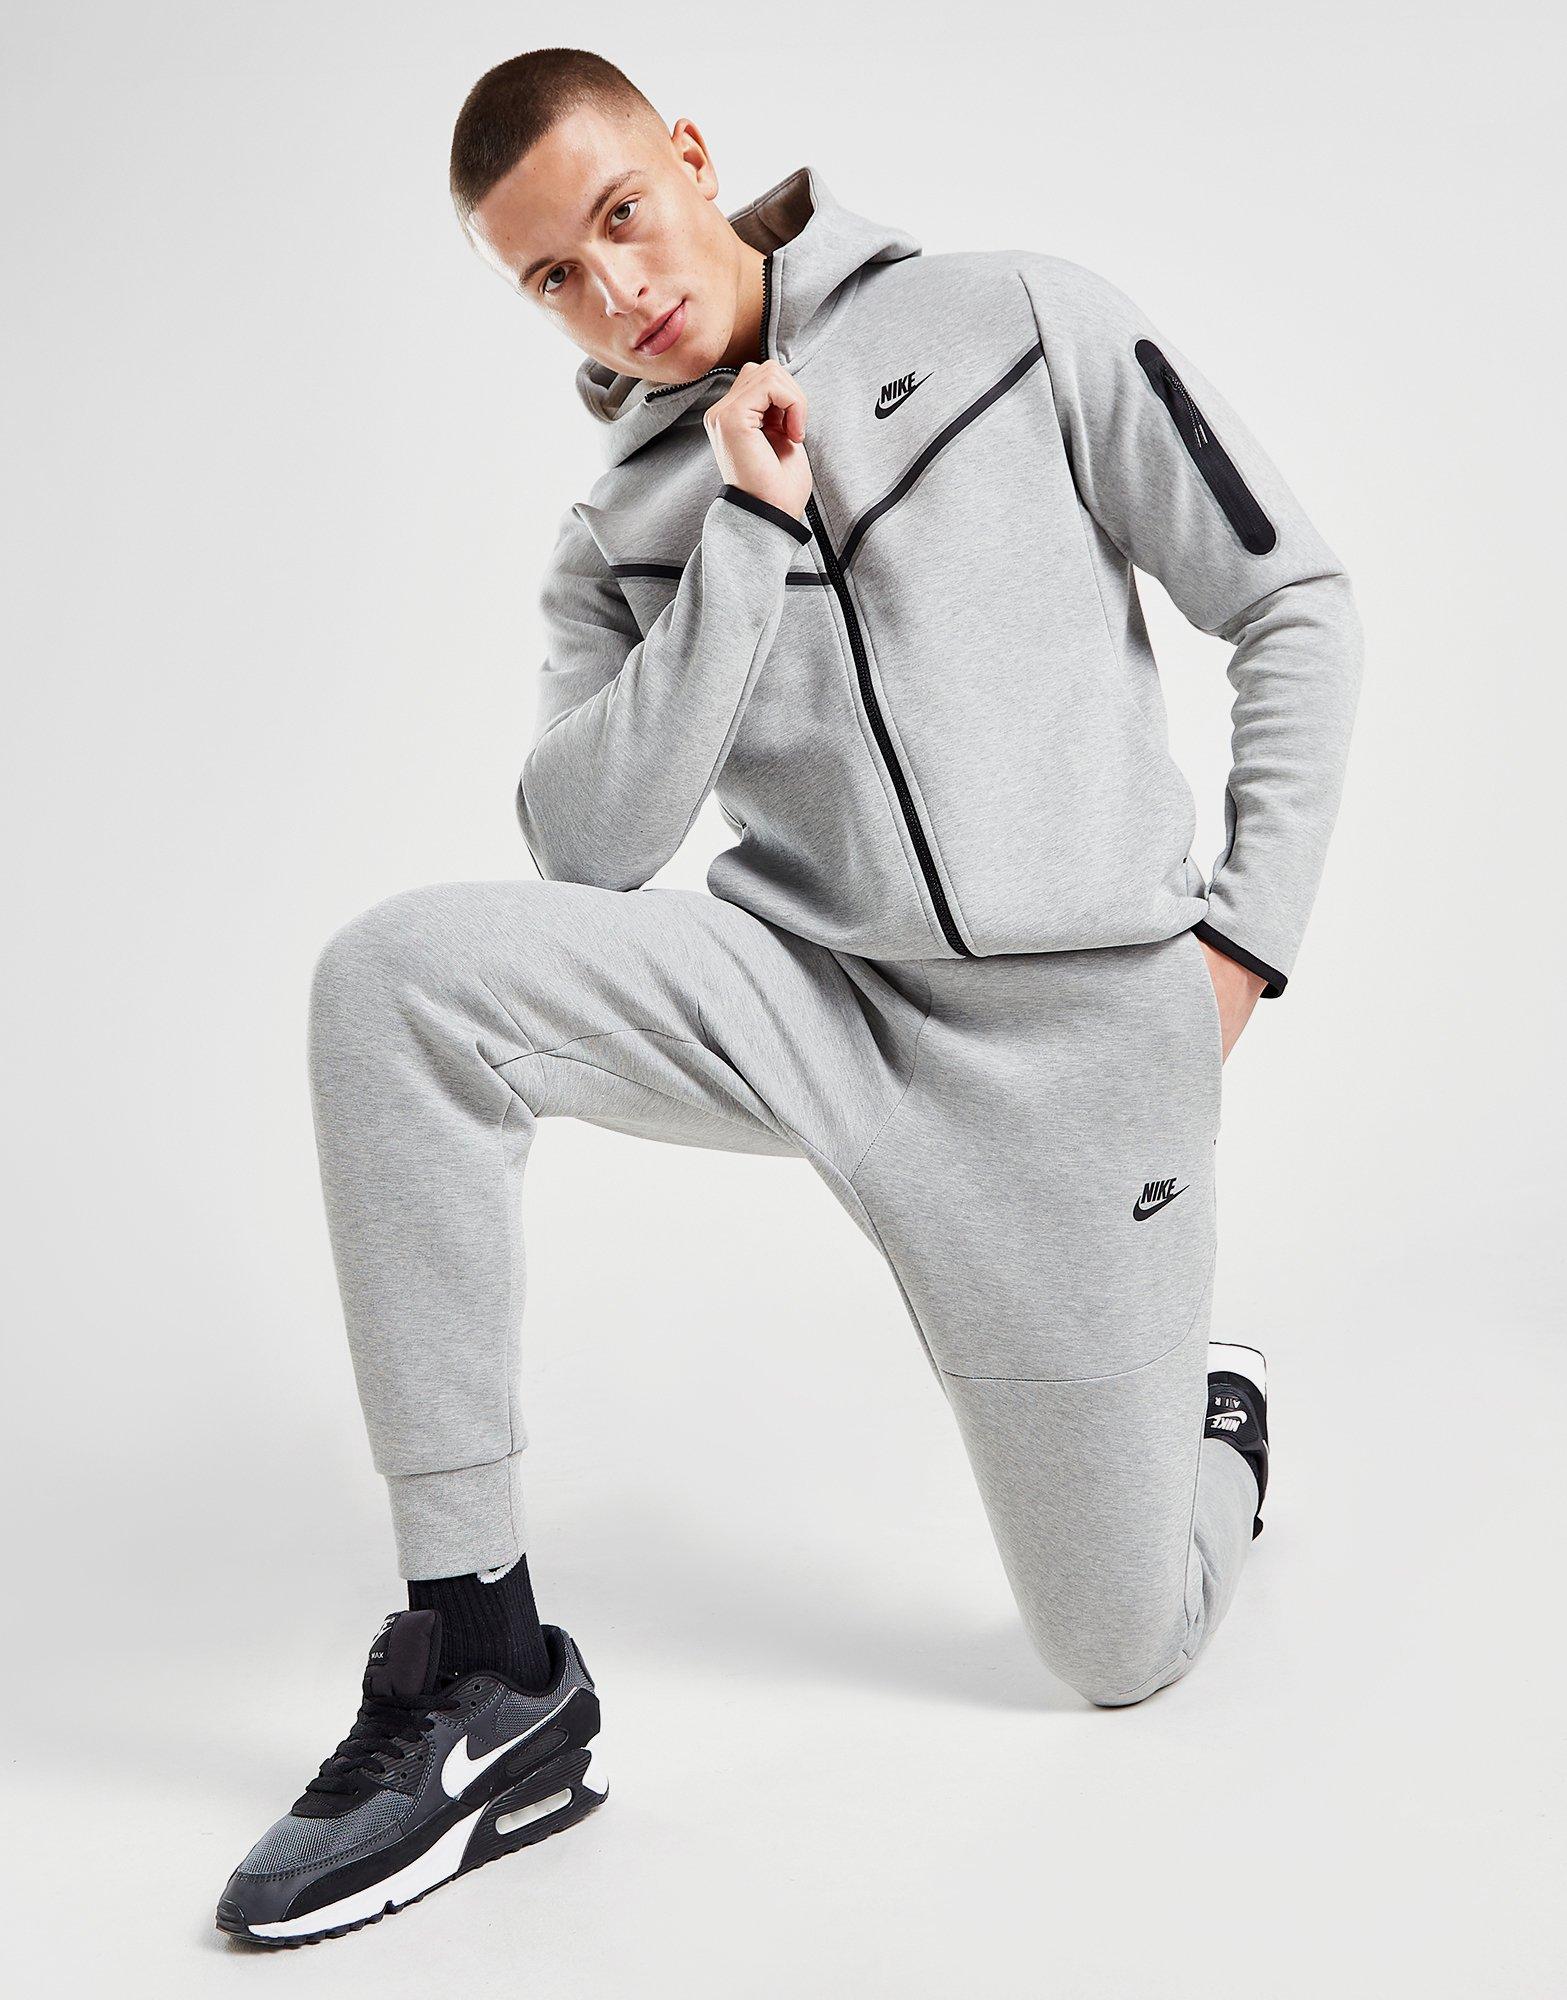 Pantalón de chándal Nike Tech gris de hombre - JD Sports España